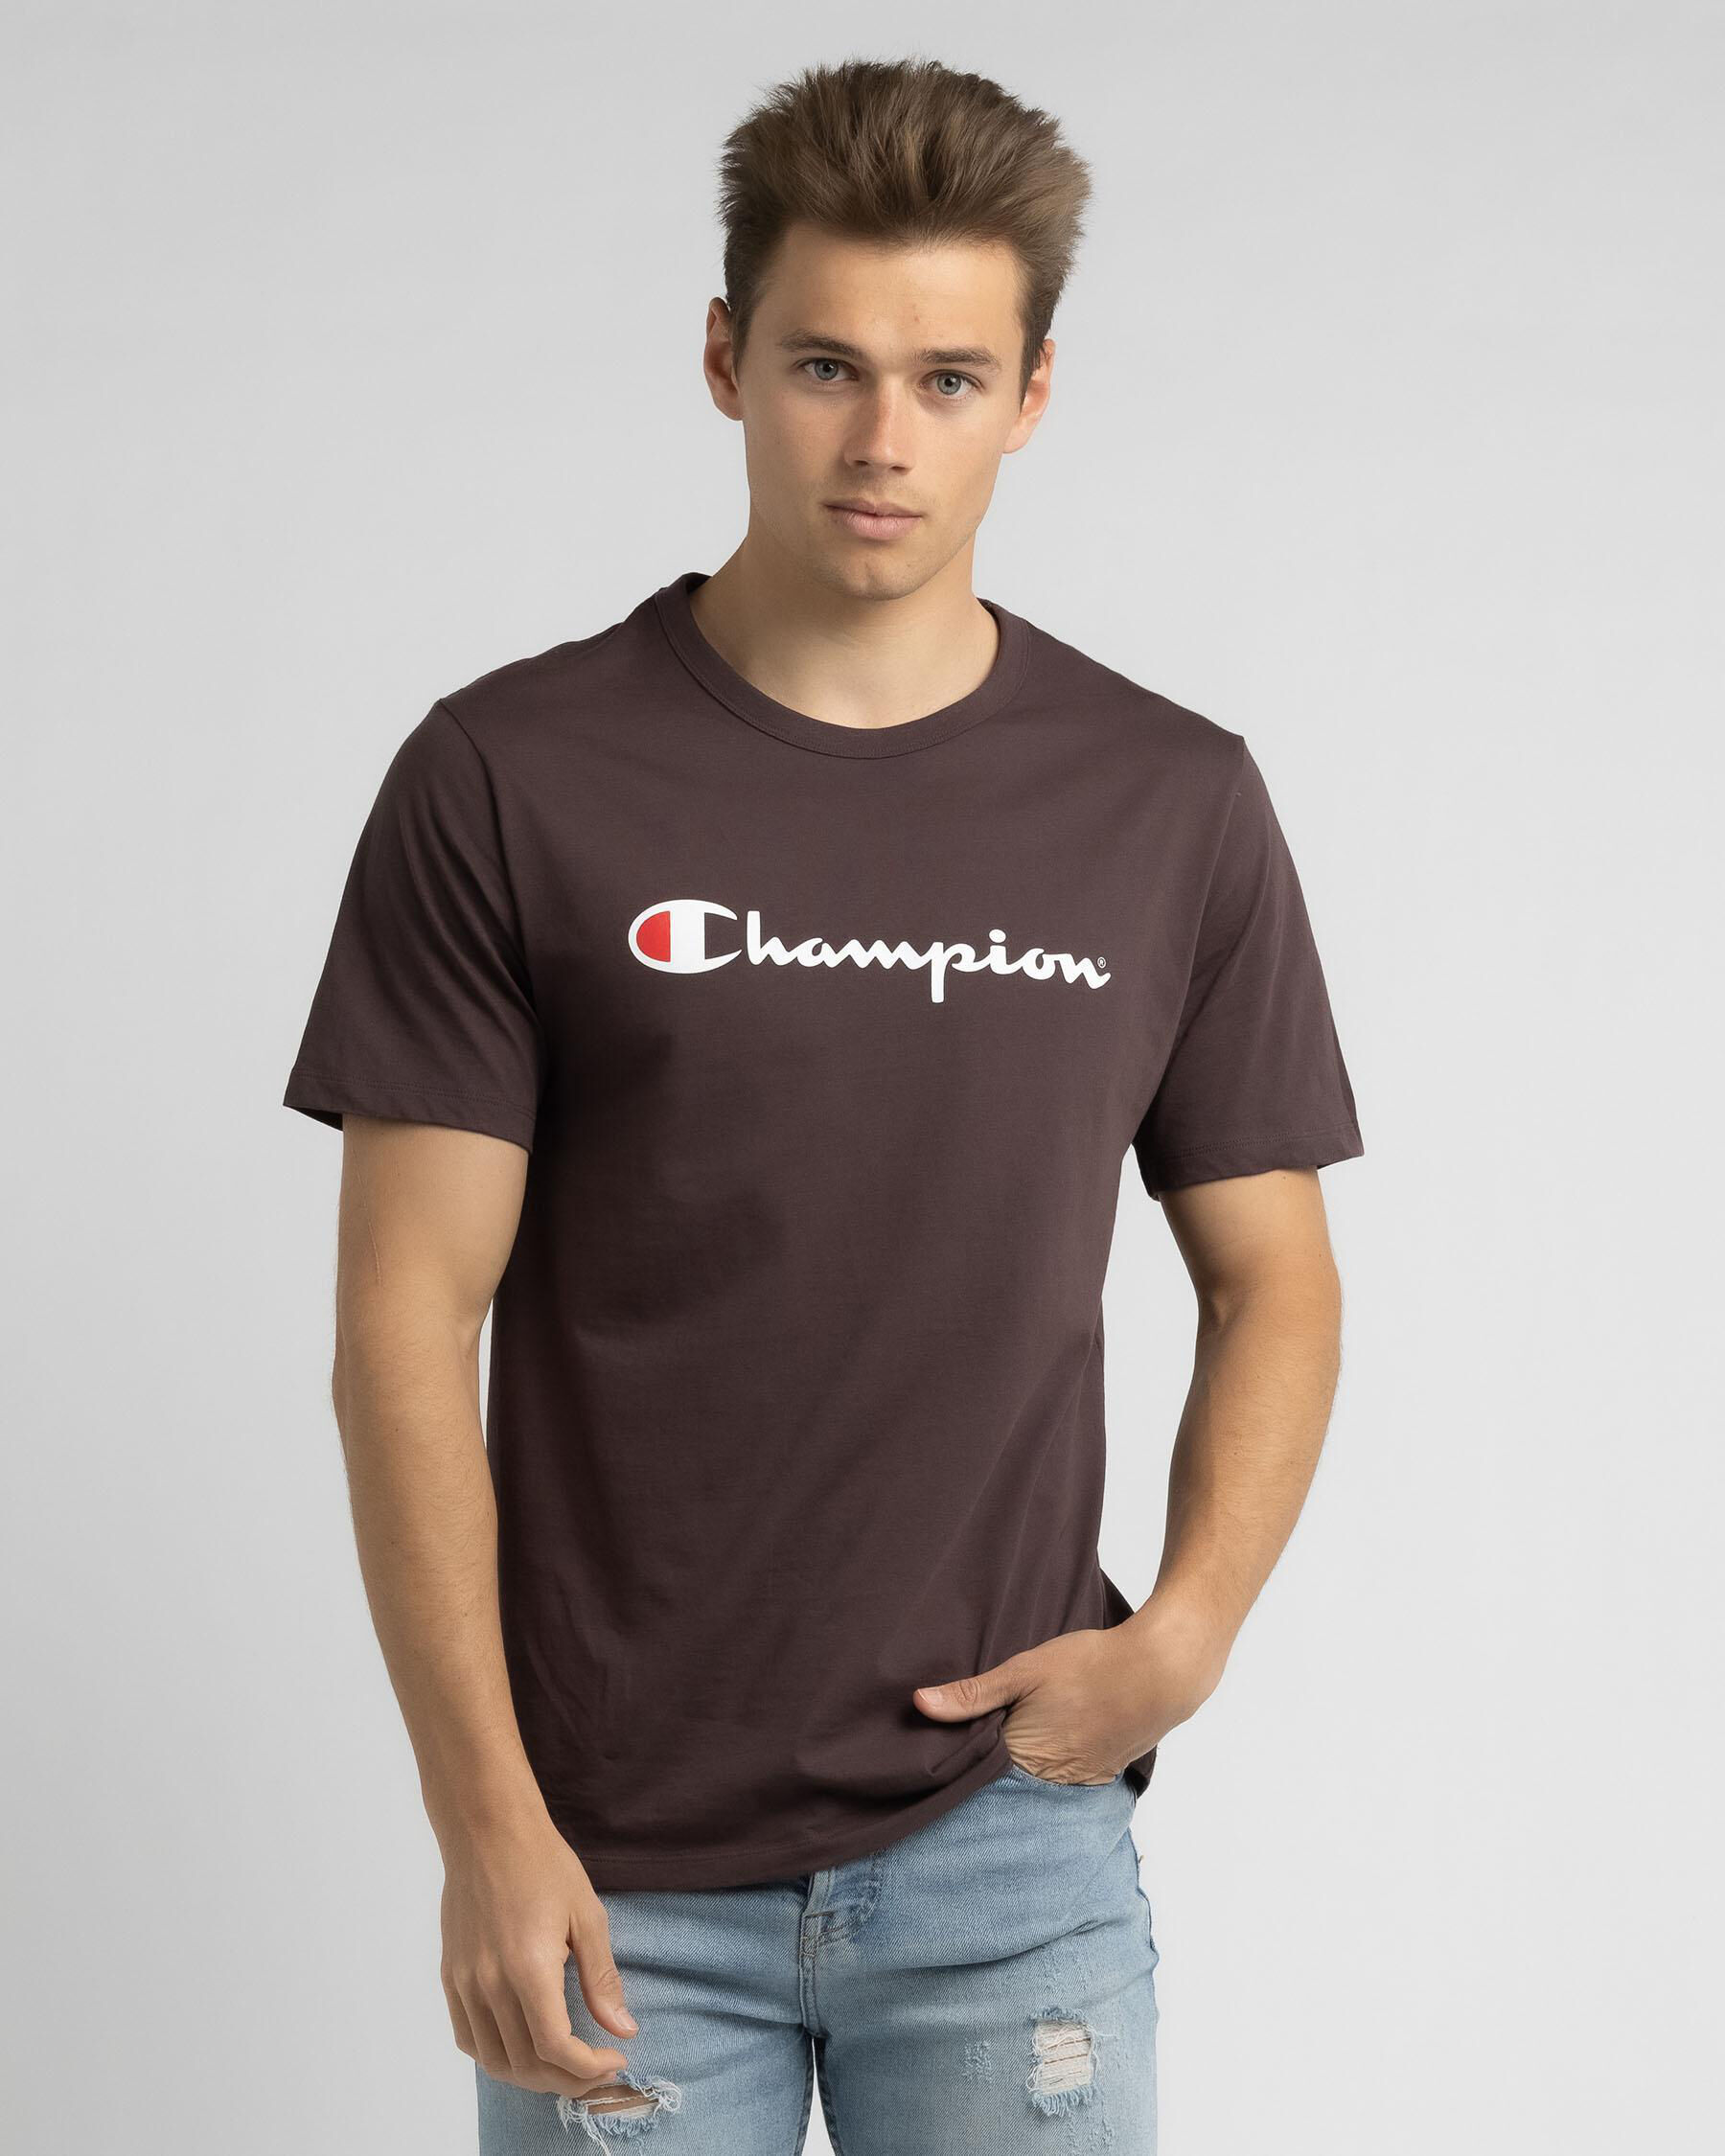 champion t shirt australia